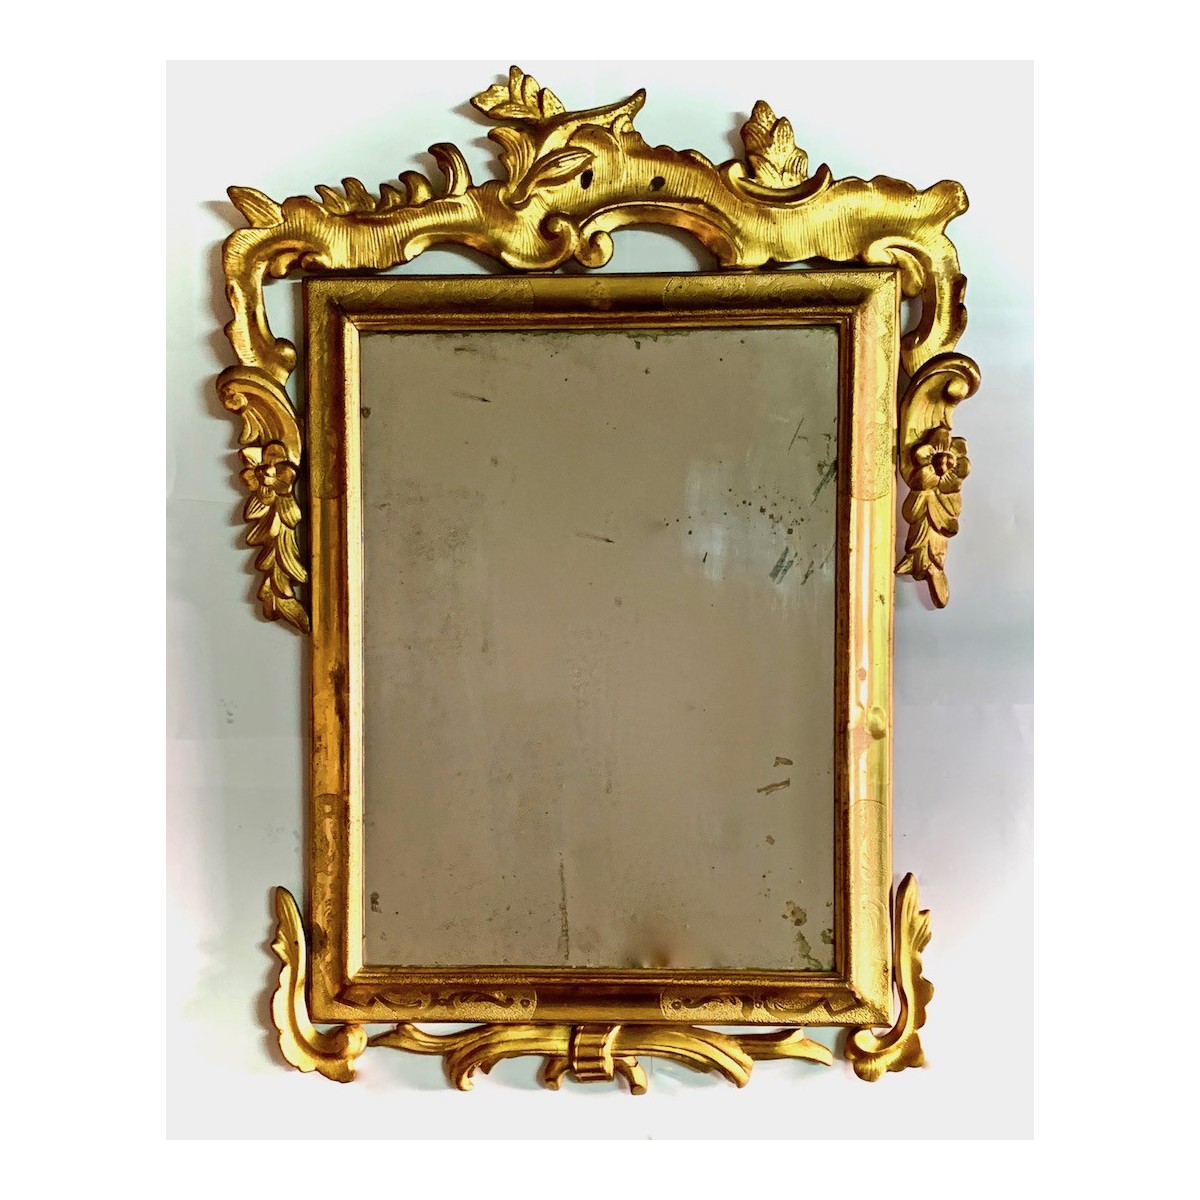 Espejo con marco tallado dorado del siglo XVIII